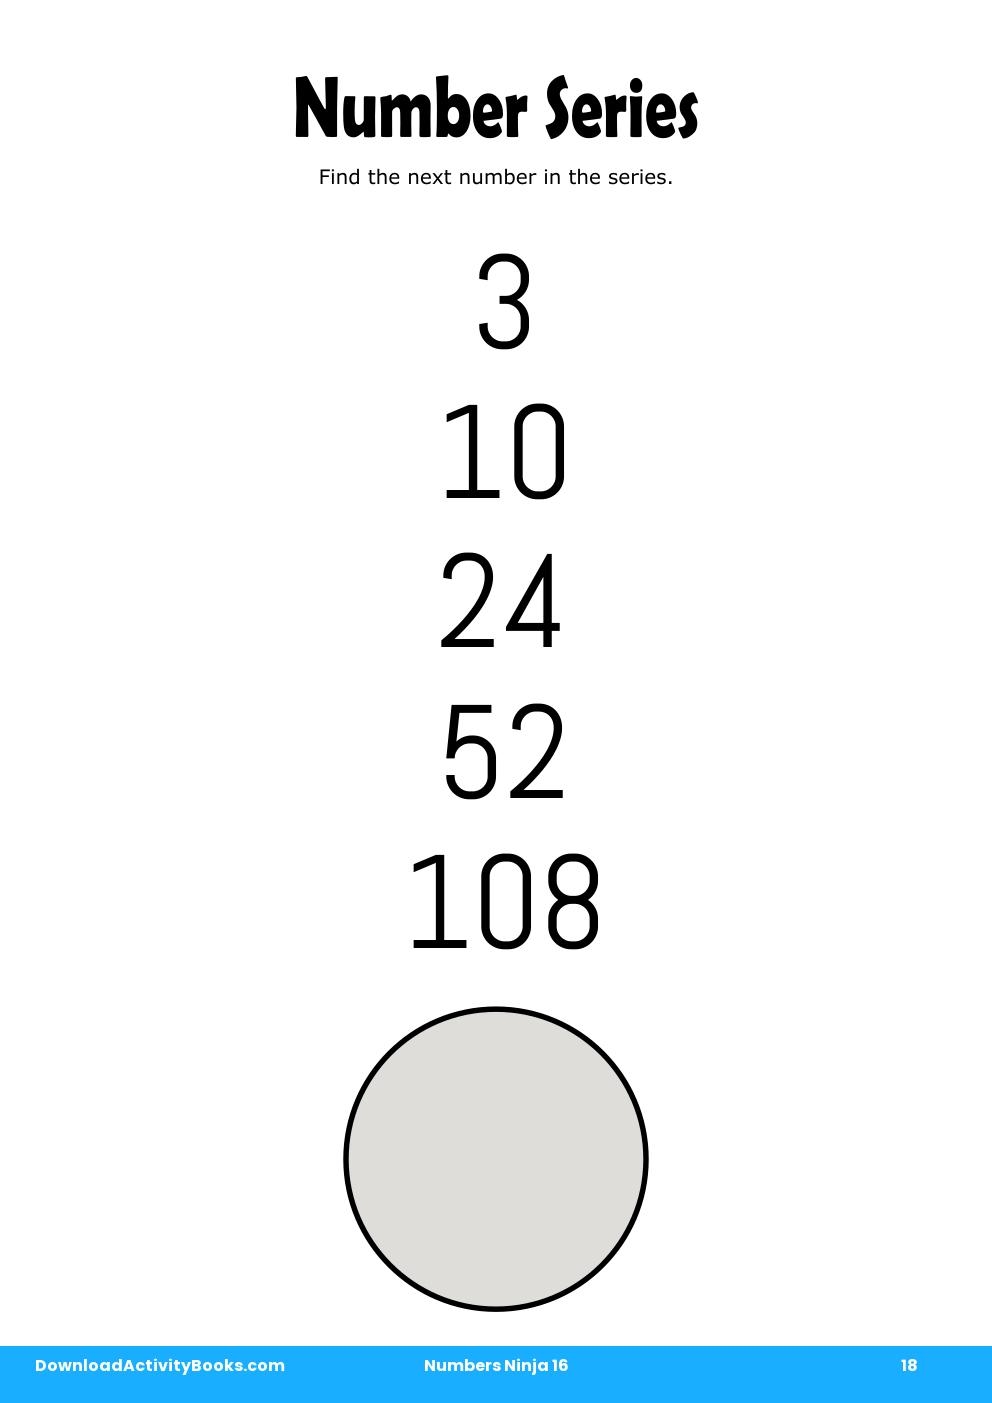 Number Series in Numbers Ninja 16